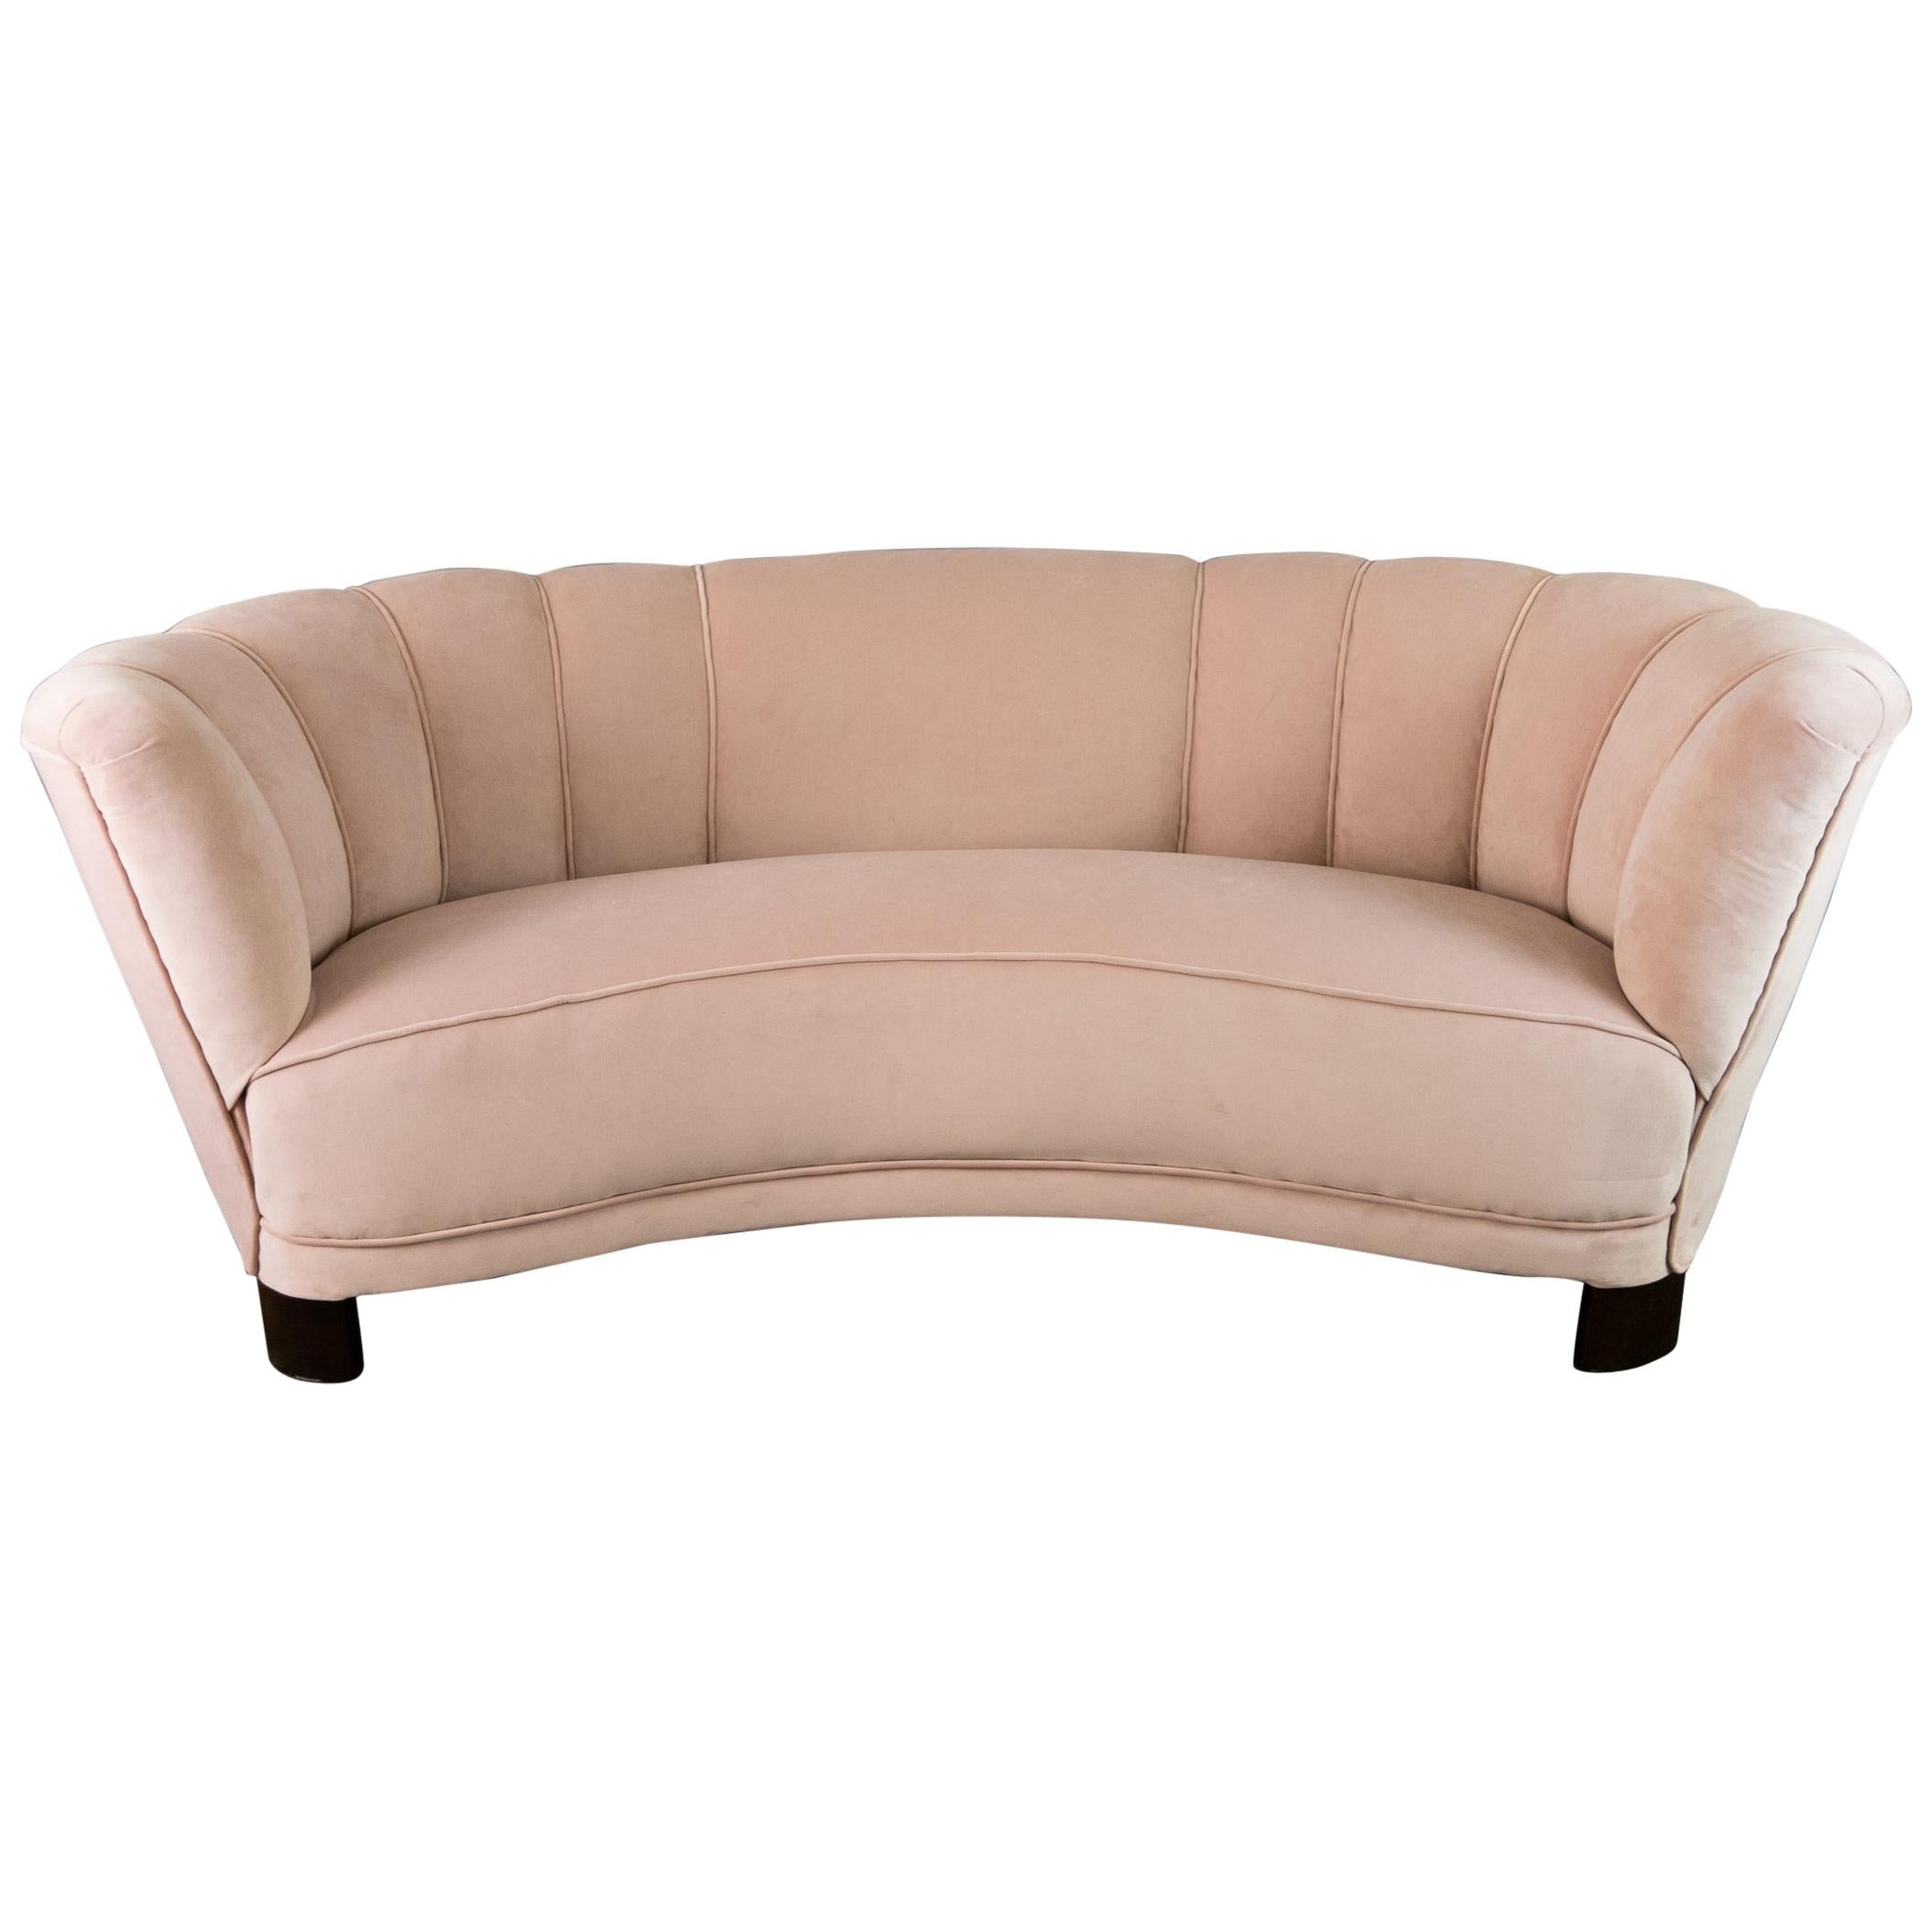 1940s Danish Banana Shaped Scalloped Sofa in Blush Pink